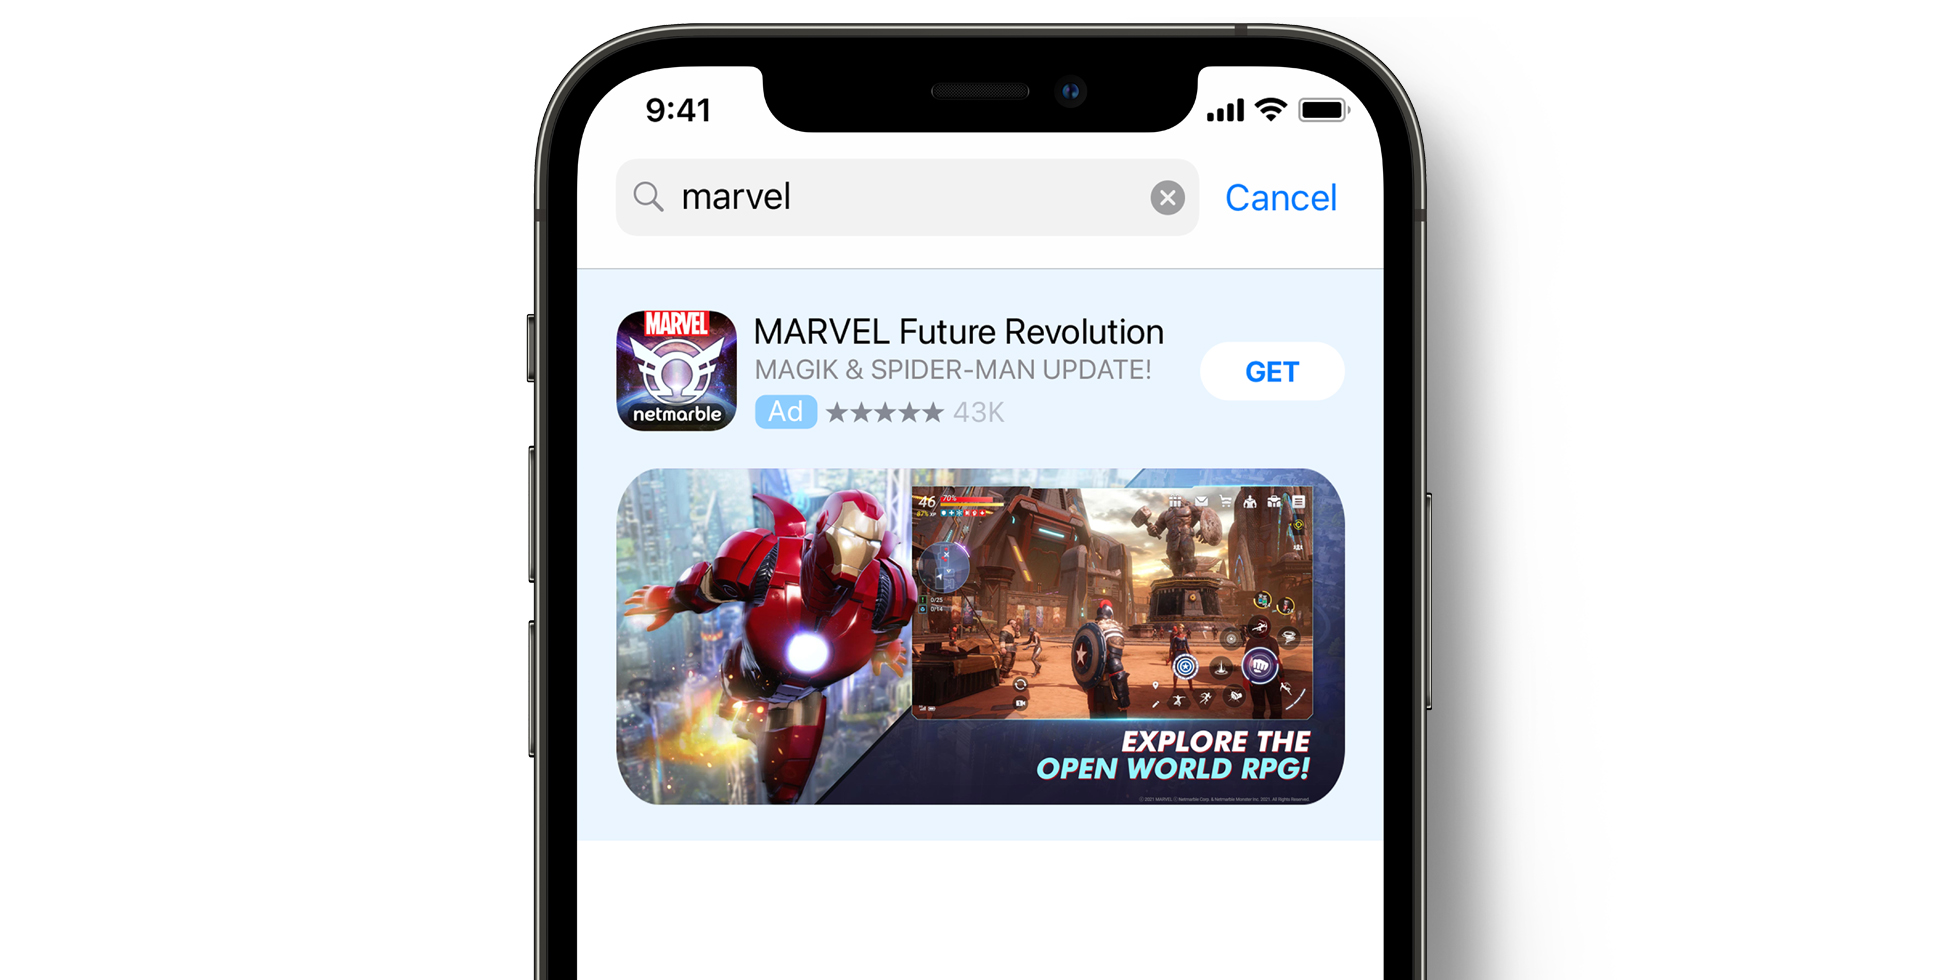 Annonce MARVEL Future Revolution dans l’App Store